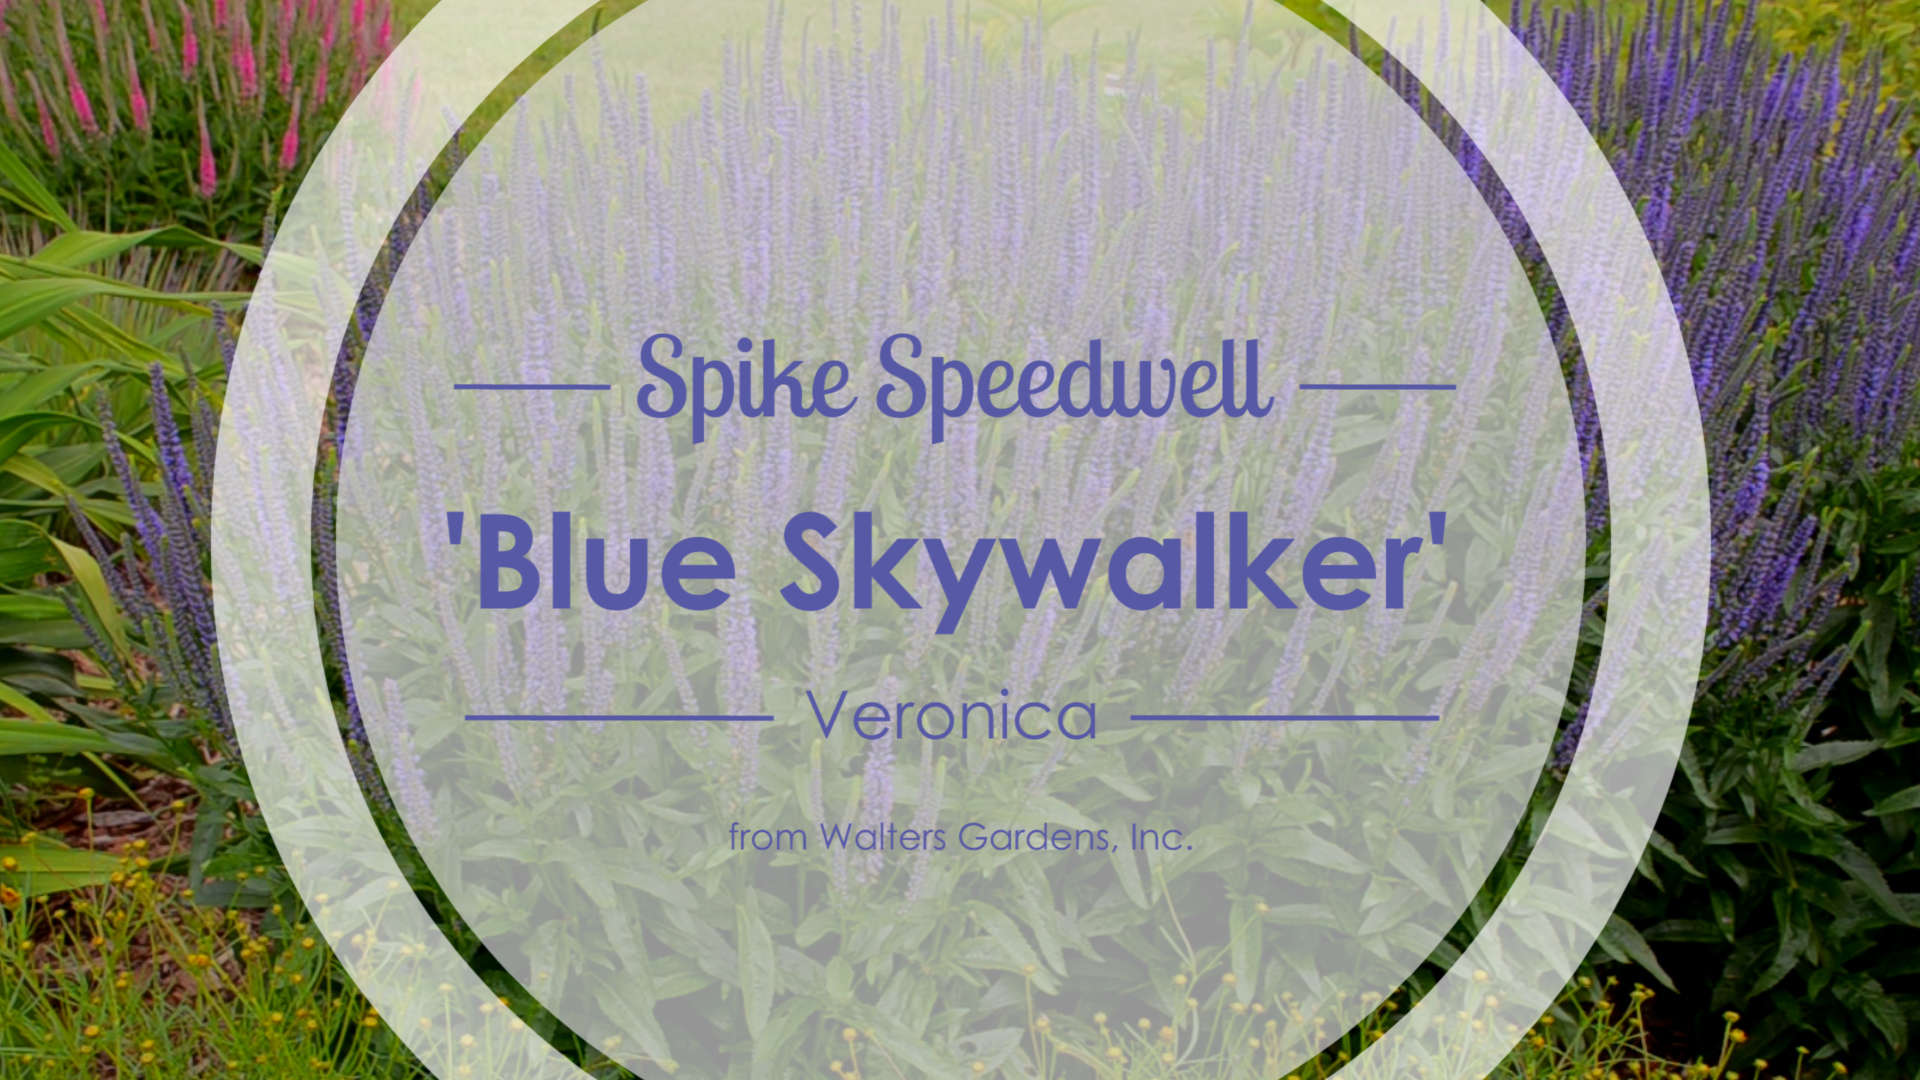 Veronica 'Blue Skywalker' Spike Speedwell